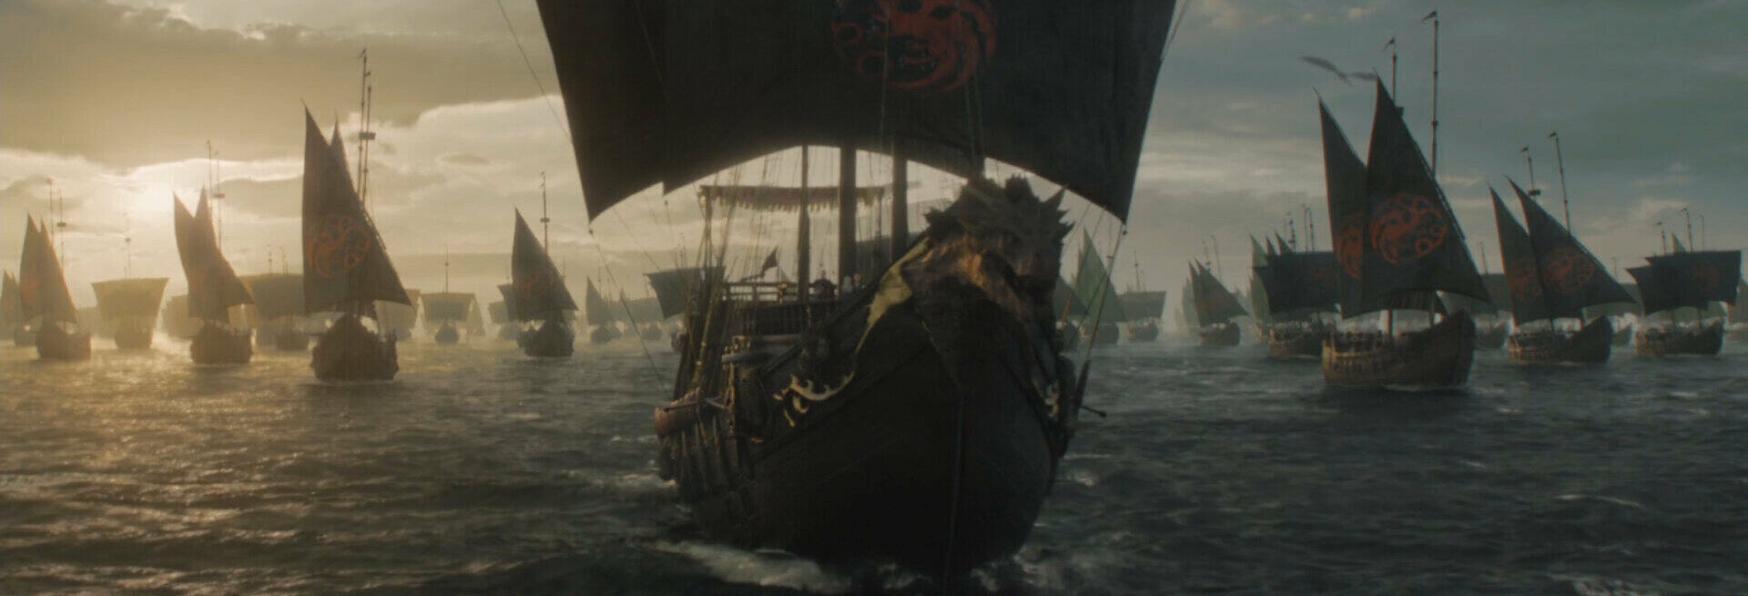 Il nuovo Spin-off di Game of Thrones 10.000 Ships parlerà della Principessa Nymeria